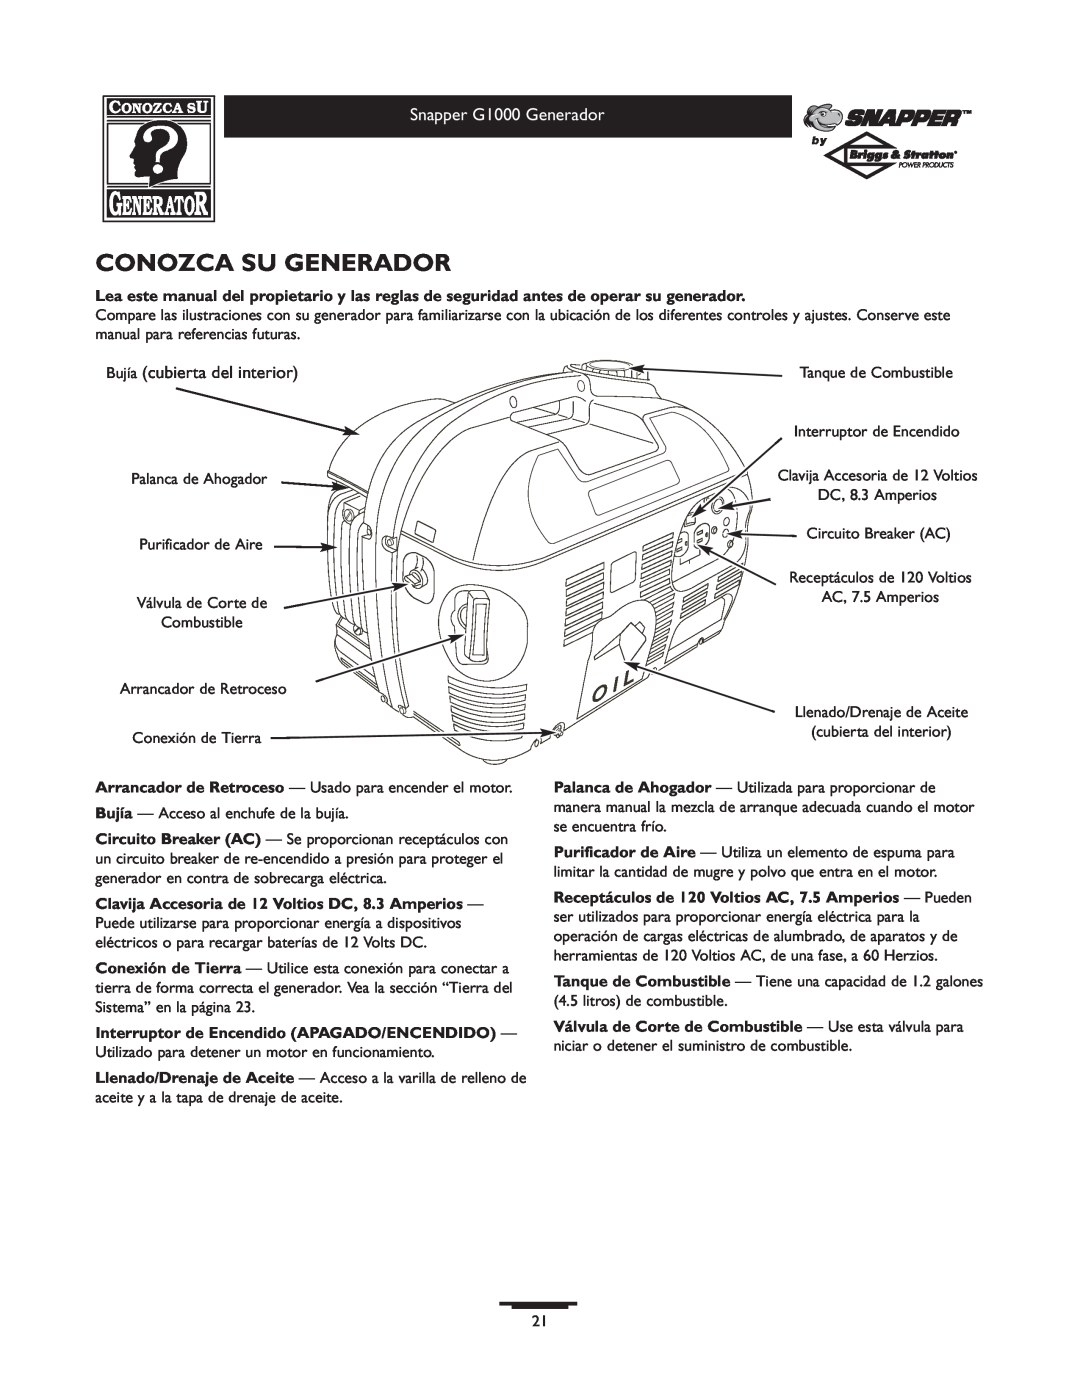 Snapper owner manual Conozca Su Generador, Snapper G1000 Generador, Bujía cubierta del interior 